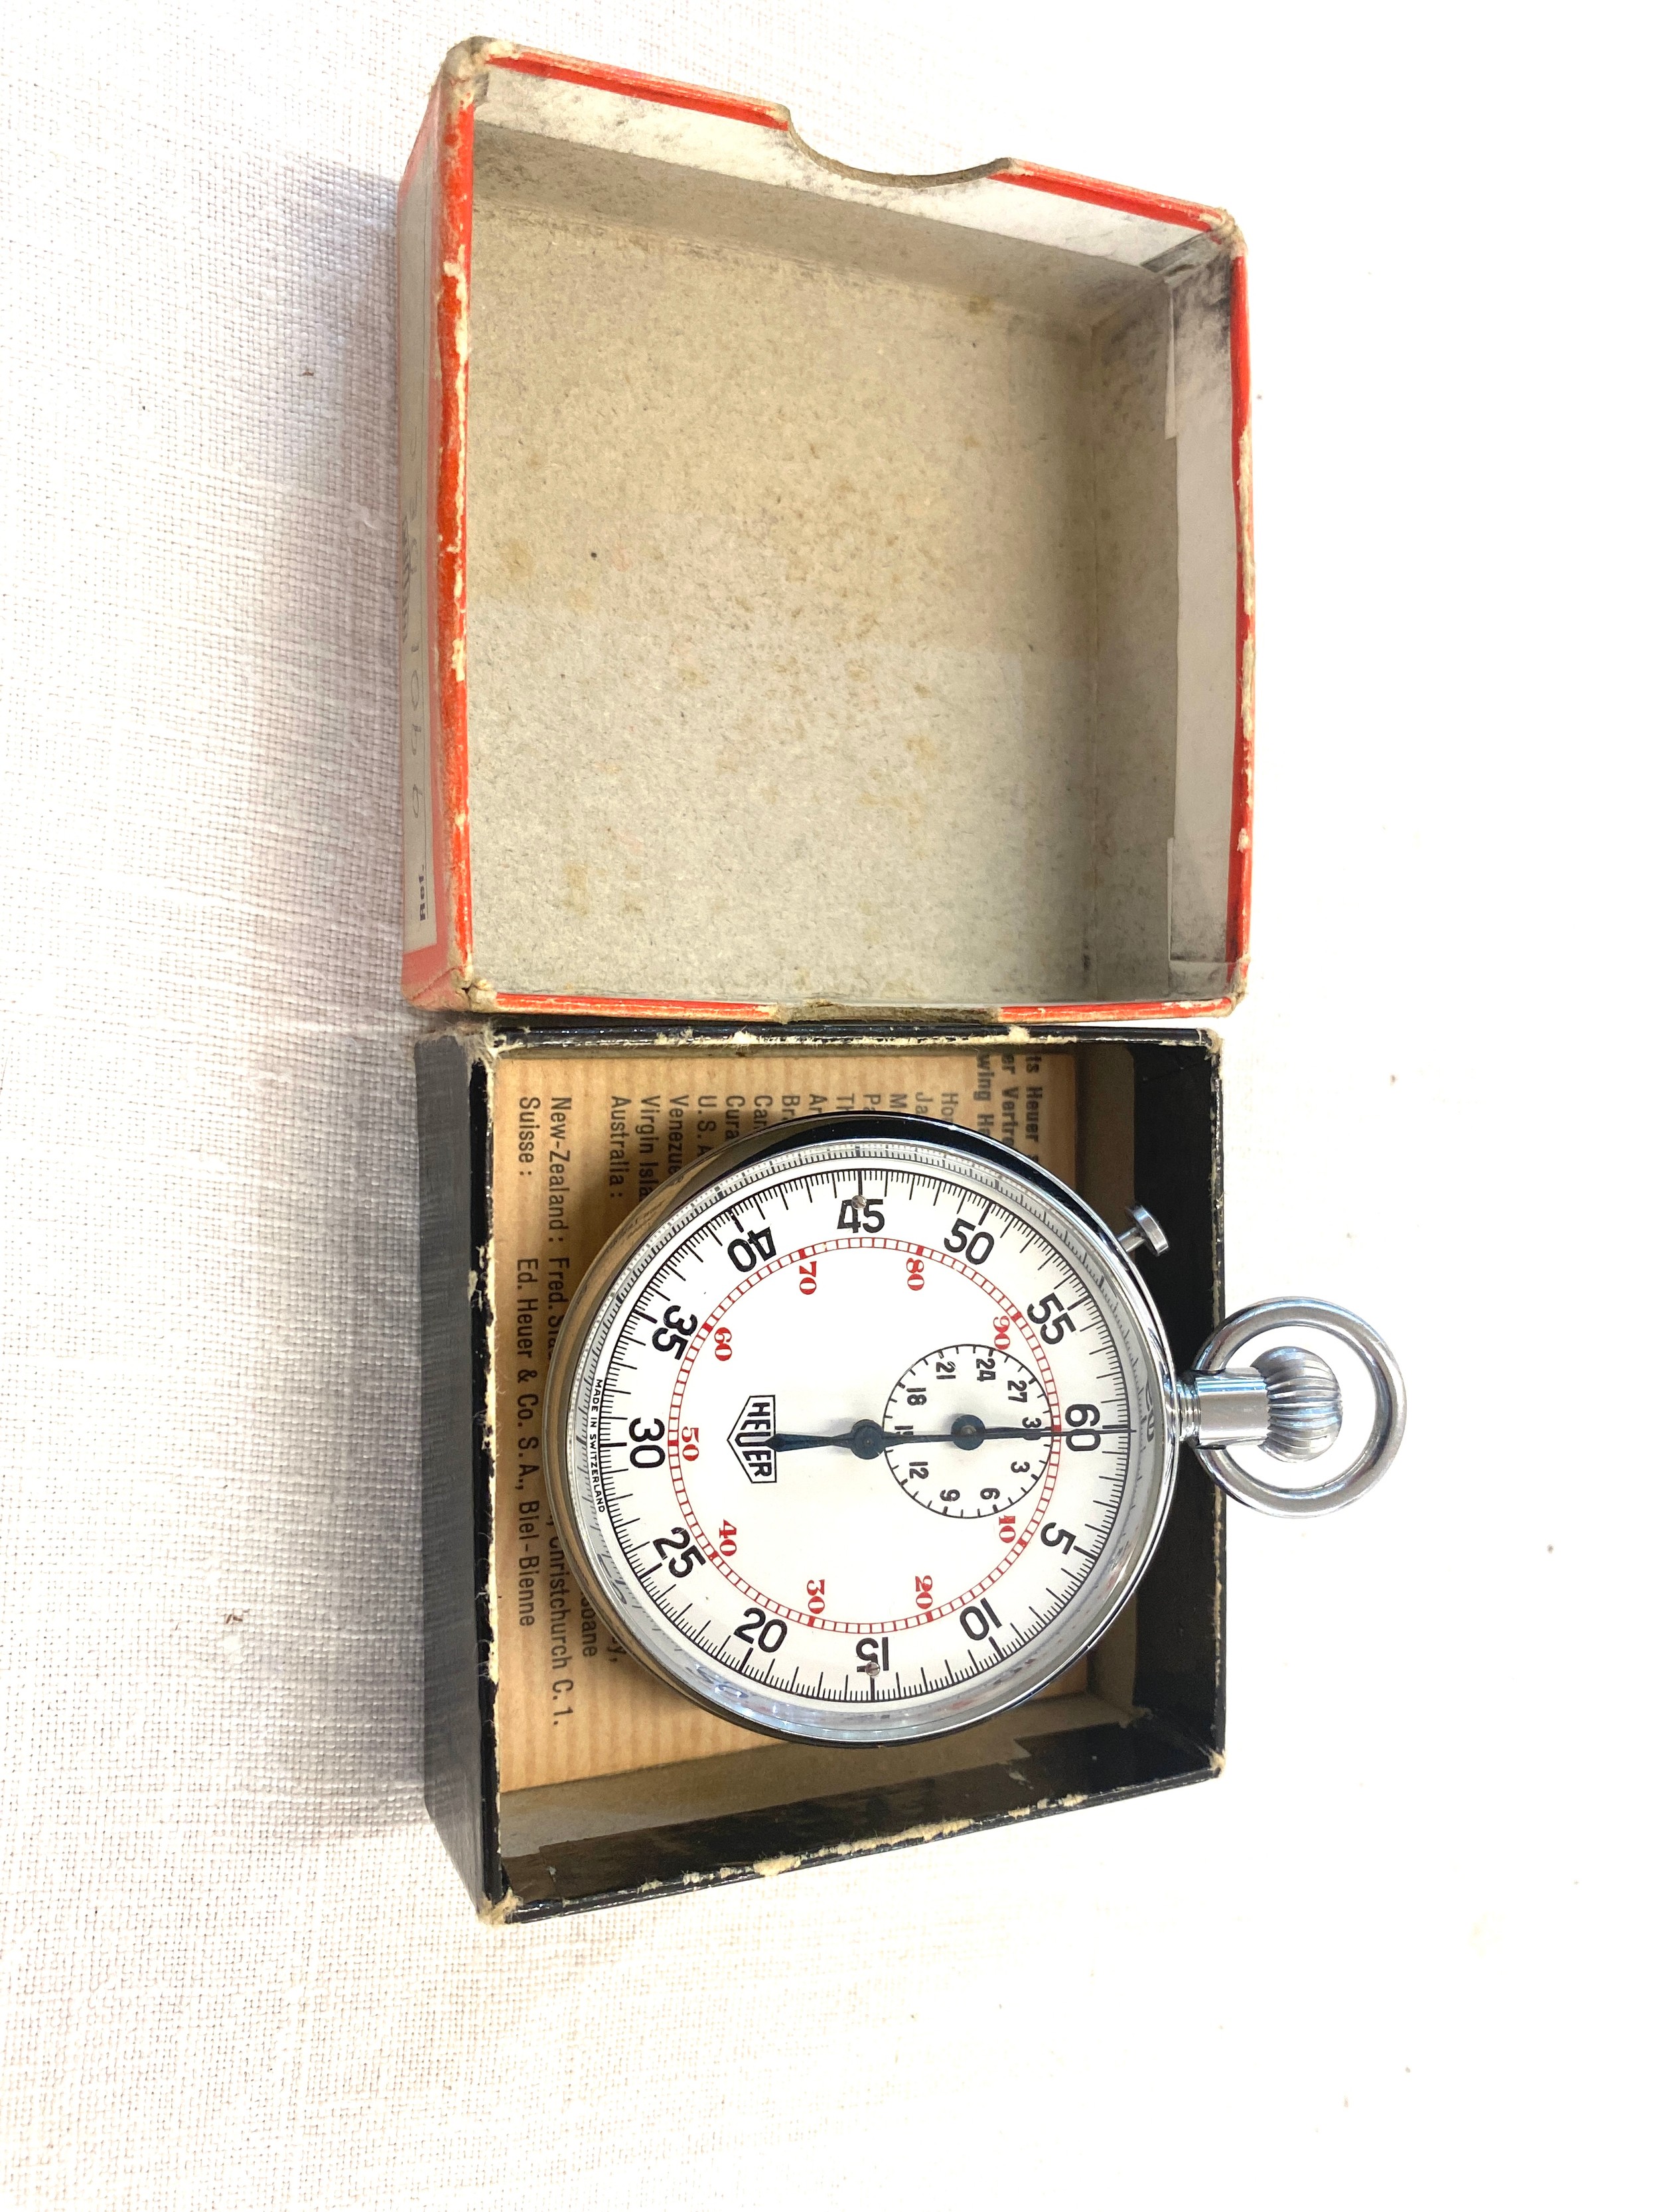 Cased heuer split second stopwatch, in original box - Image 4 of 4